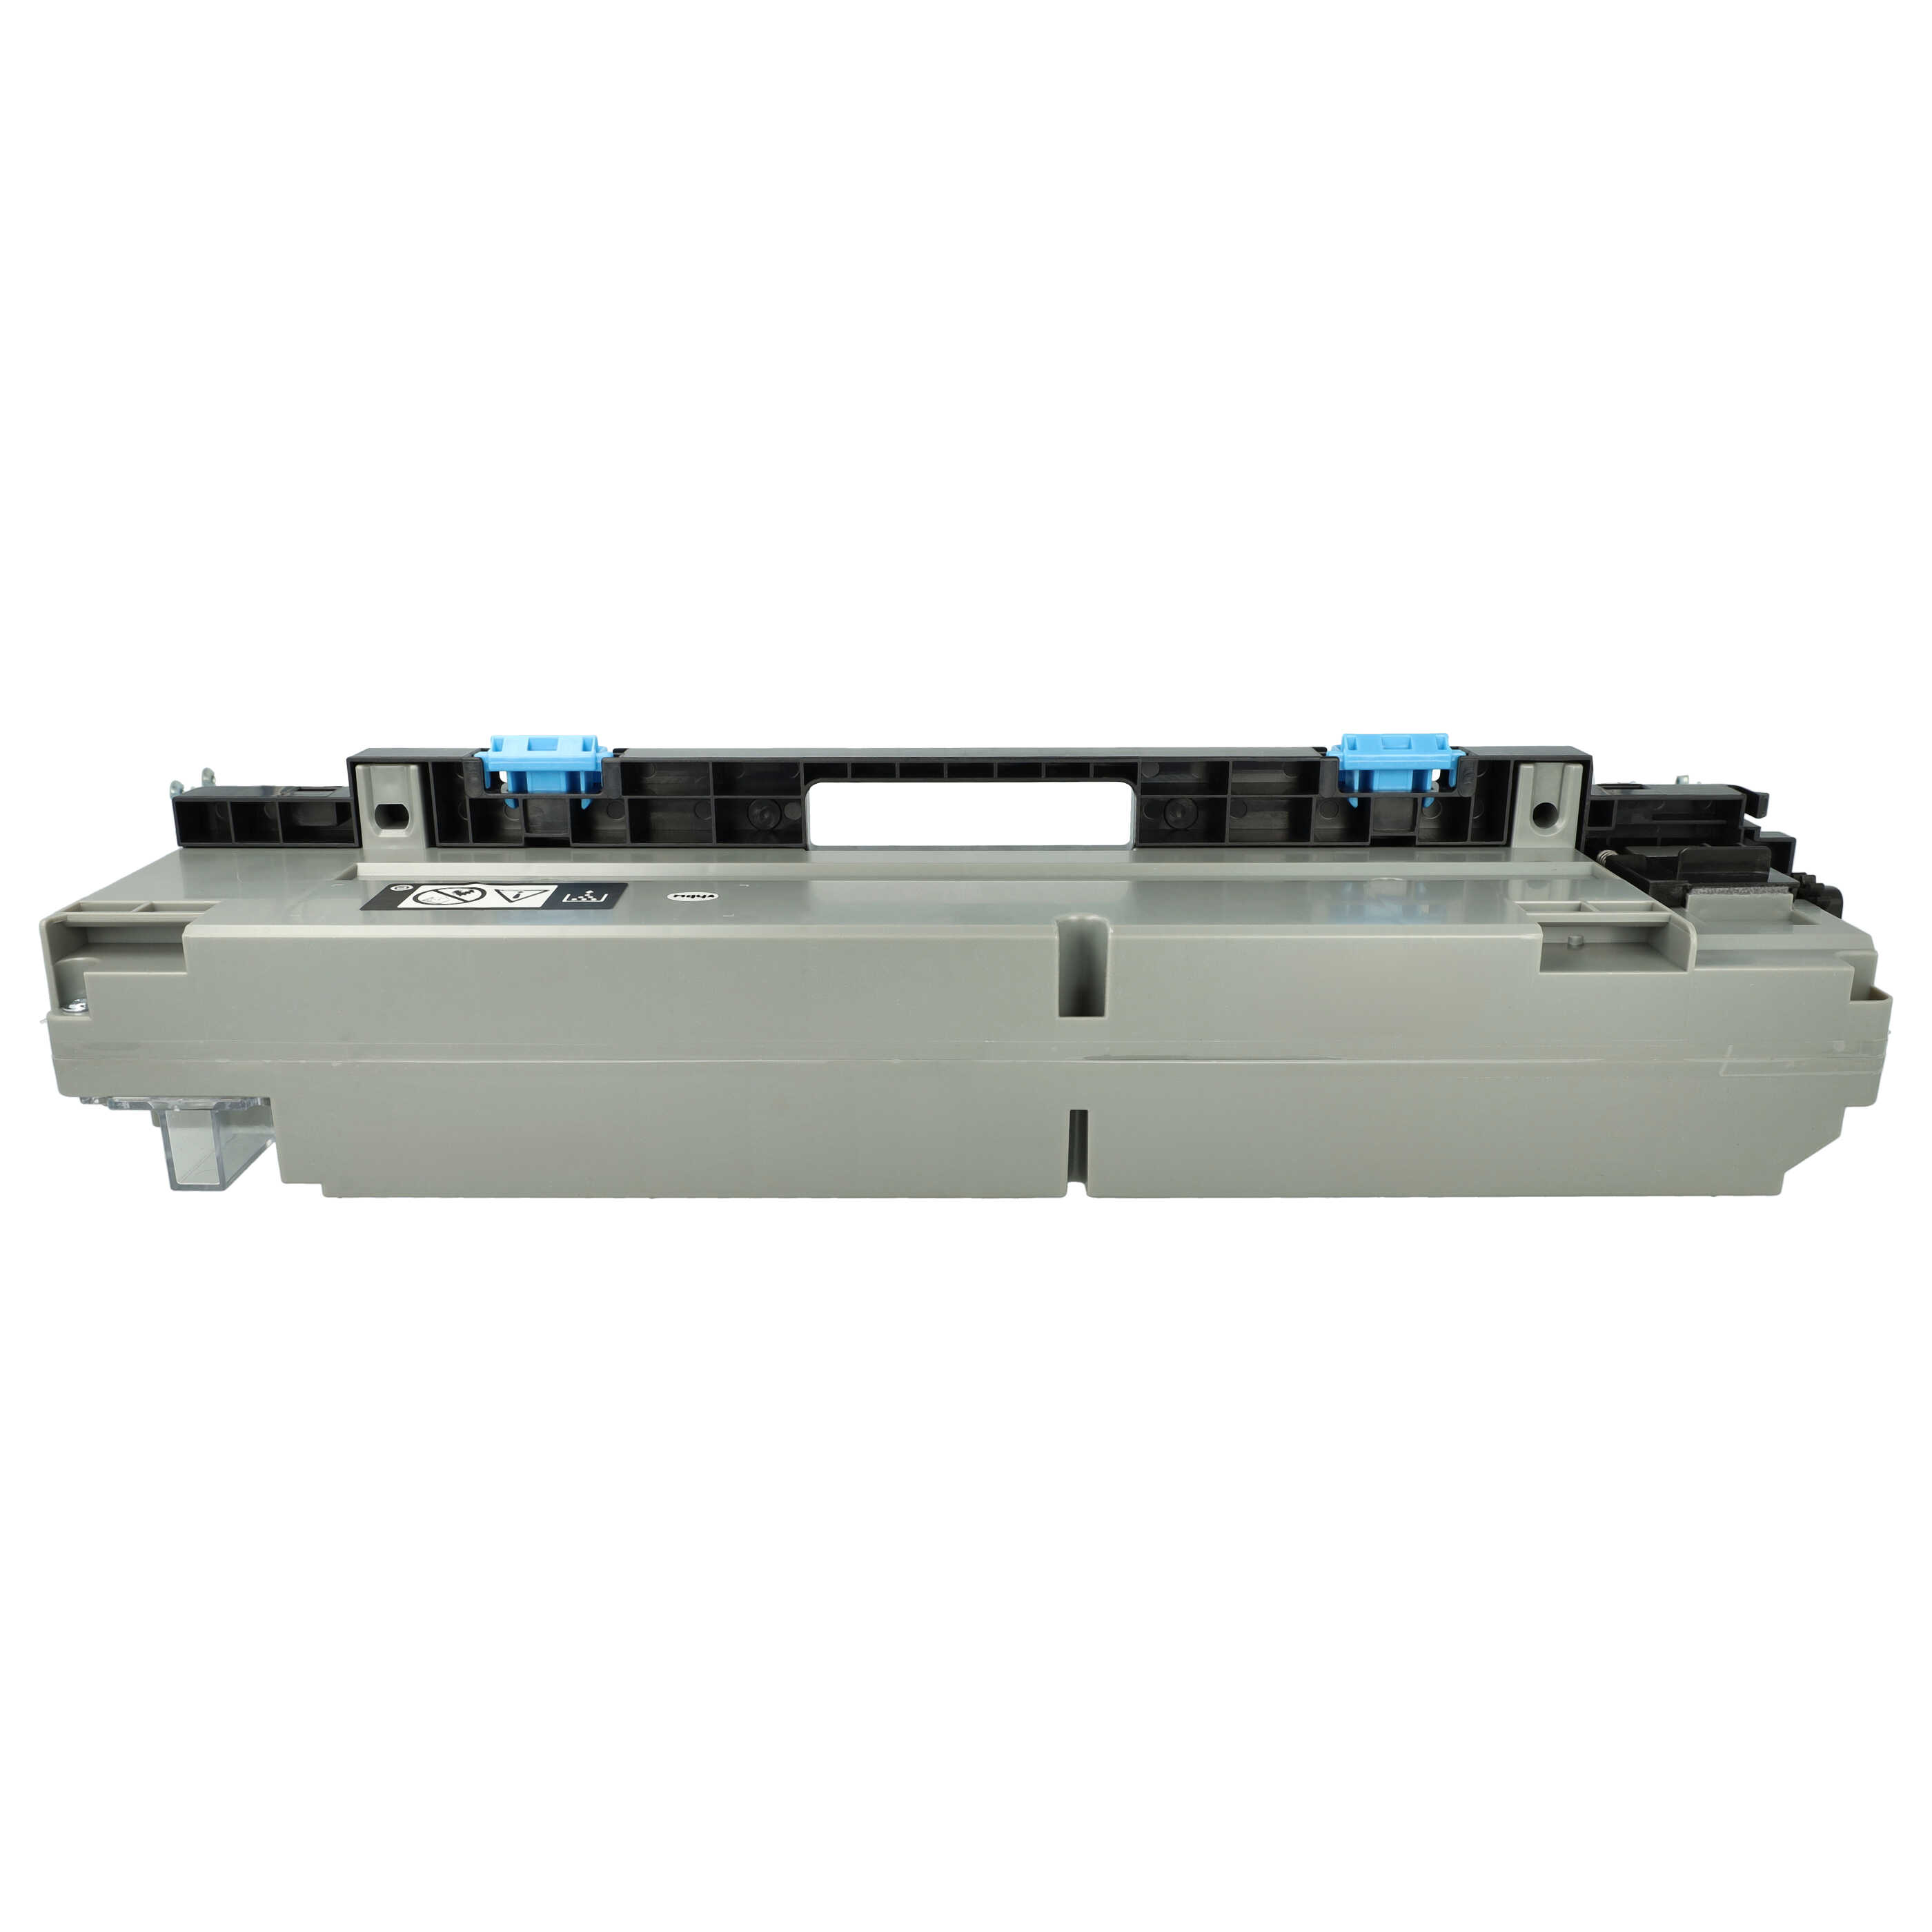 Resttonerbehälter als Ersatz für Konica Minolta für Olivetti D-Color 259 Laserdrucker u.a. - grau